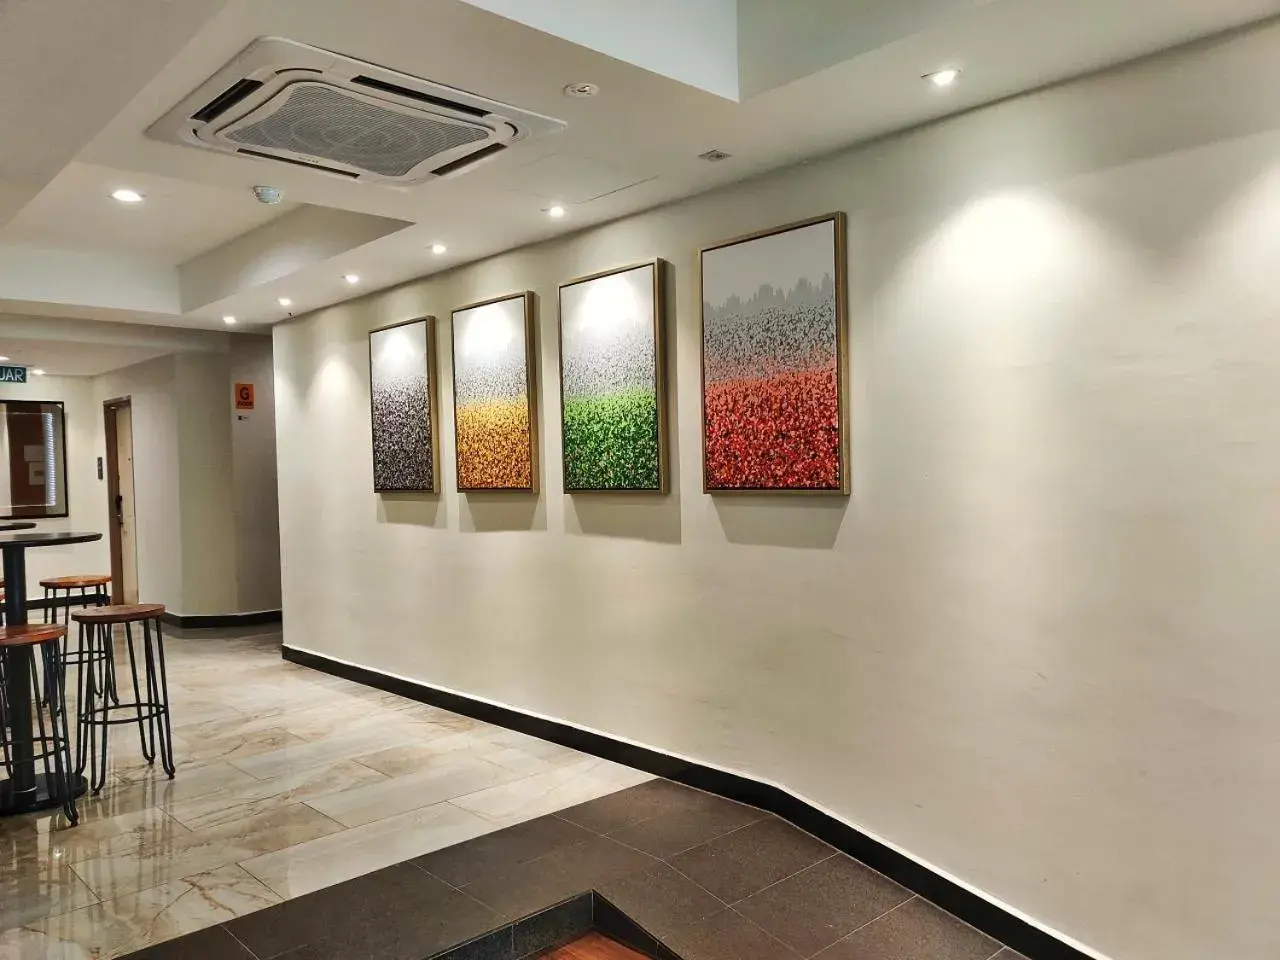 Lobby or reception in Meriton Inn Hotel